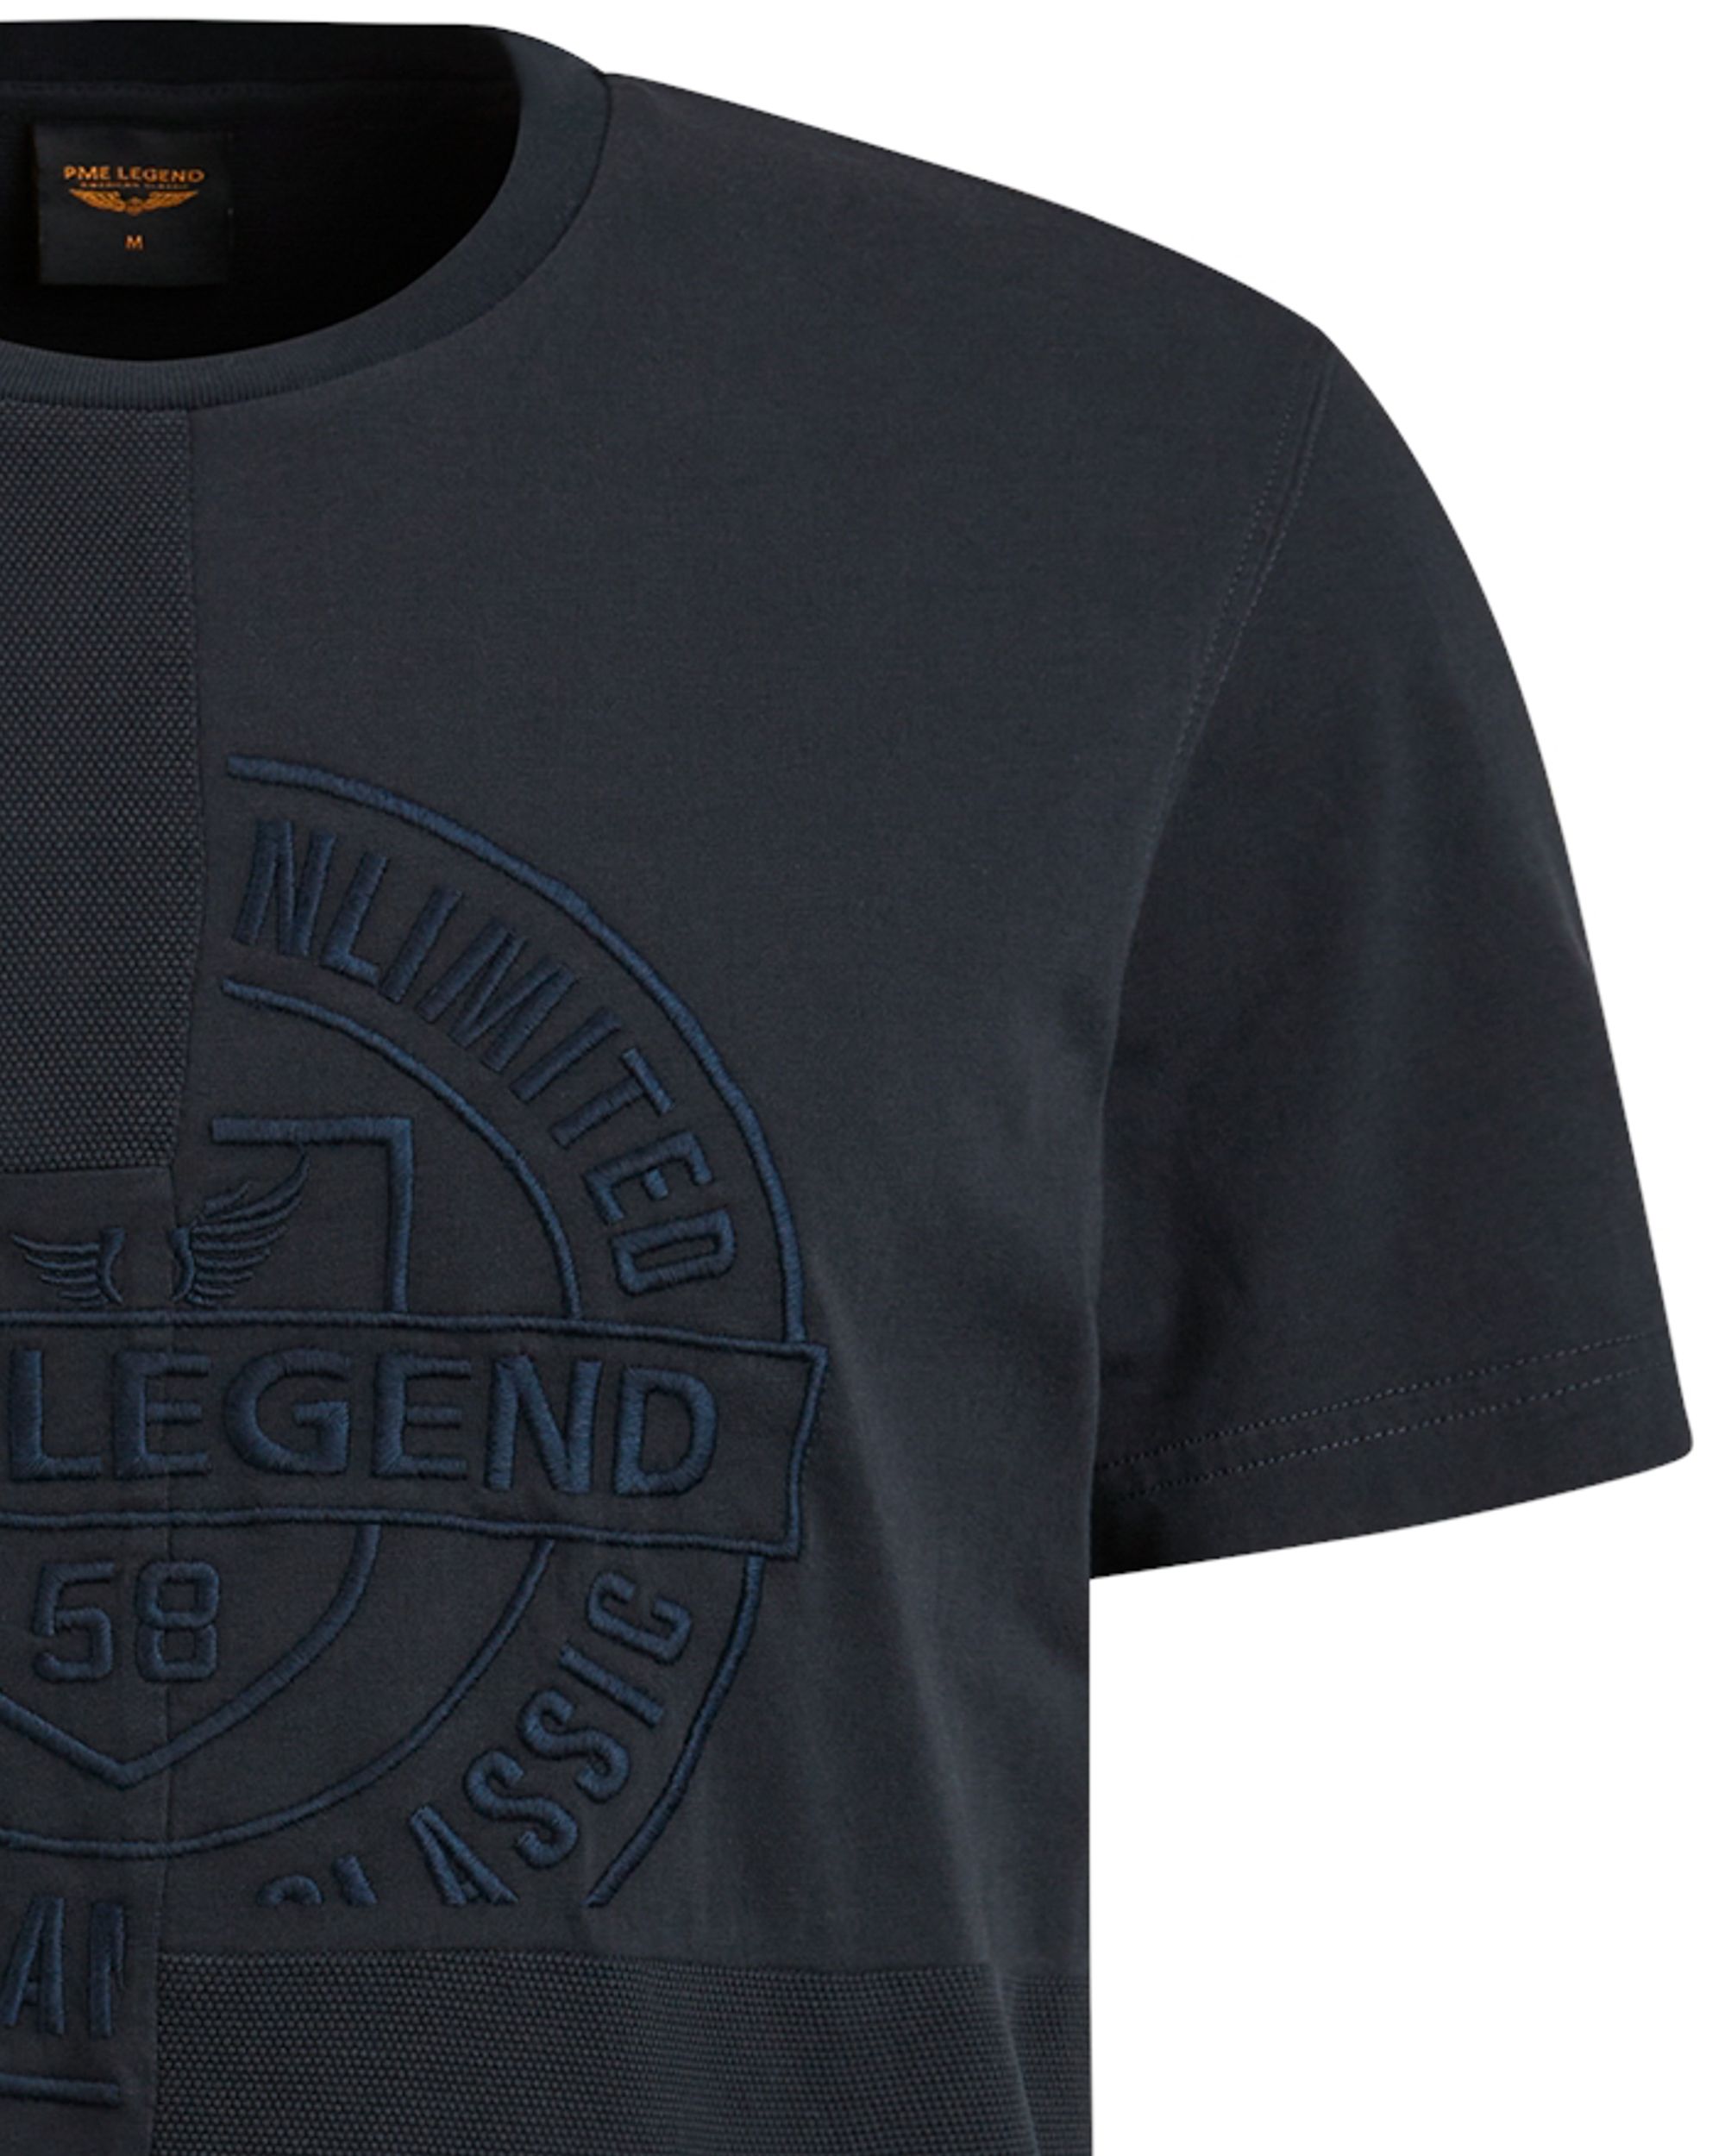 PME Legend T-shirt KM Blauw 092513-001-L